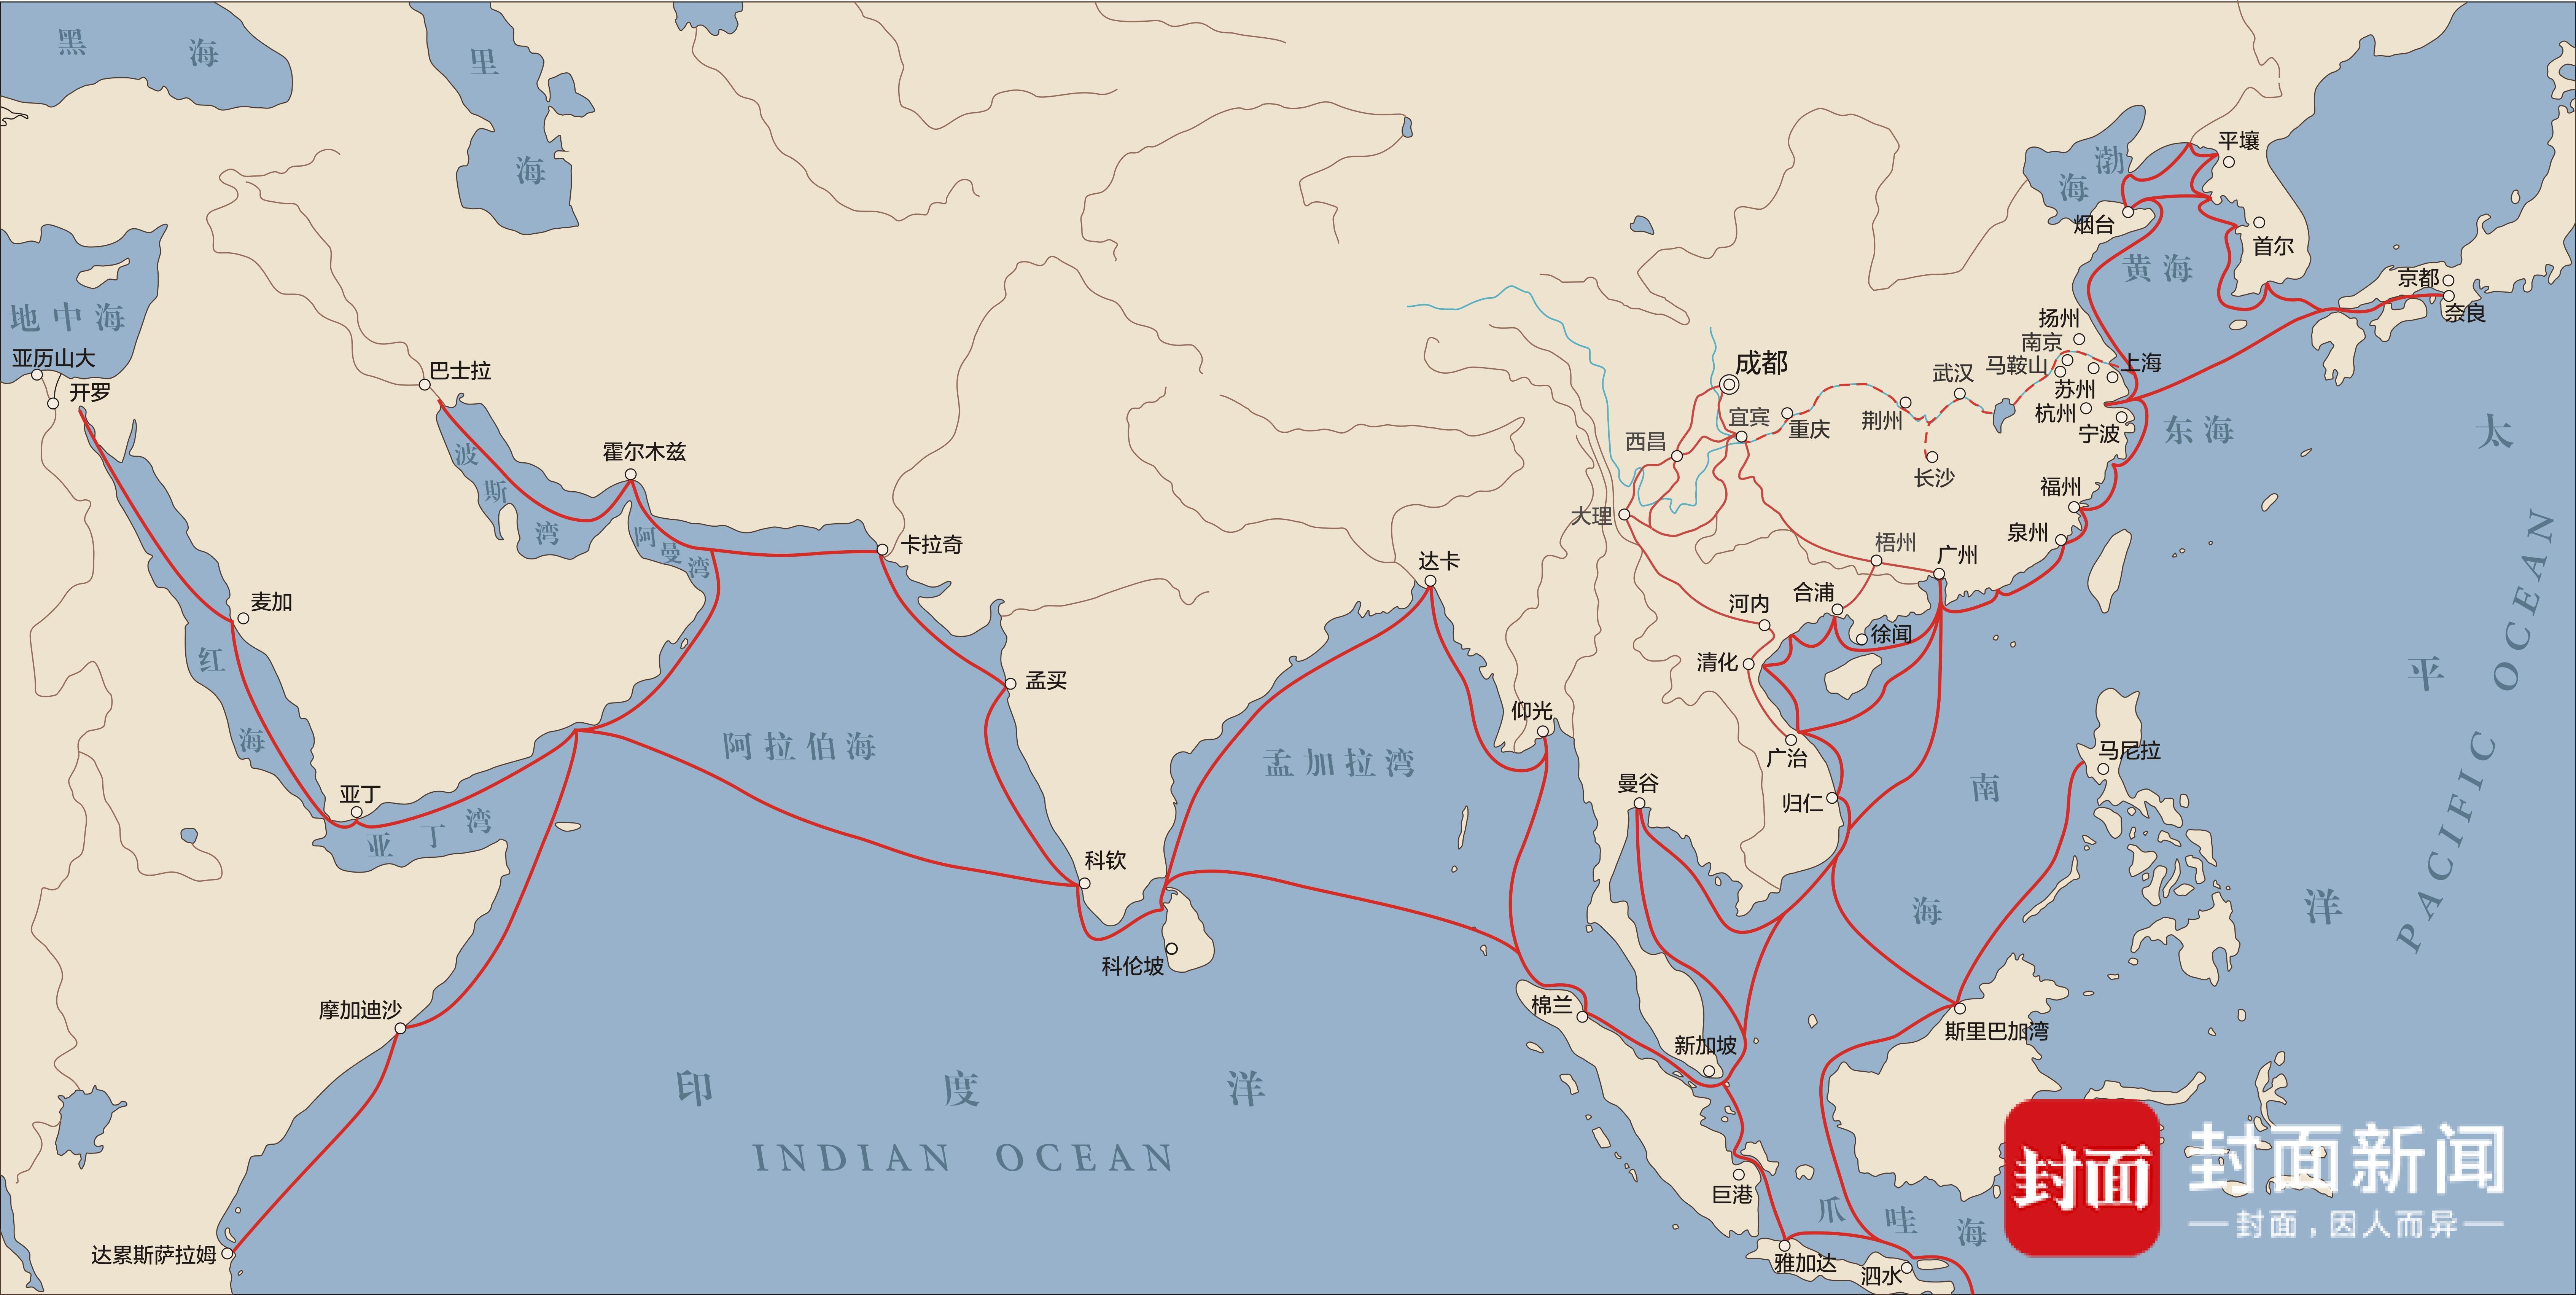 海上丝绸之路线路图图片